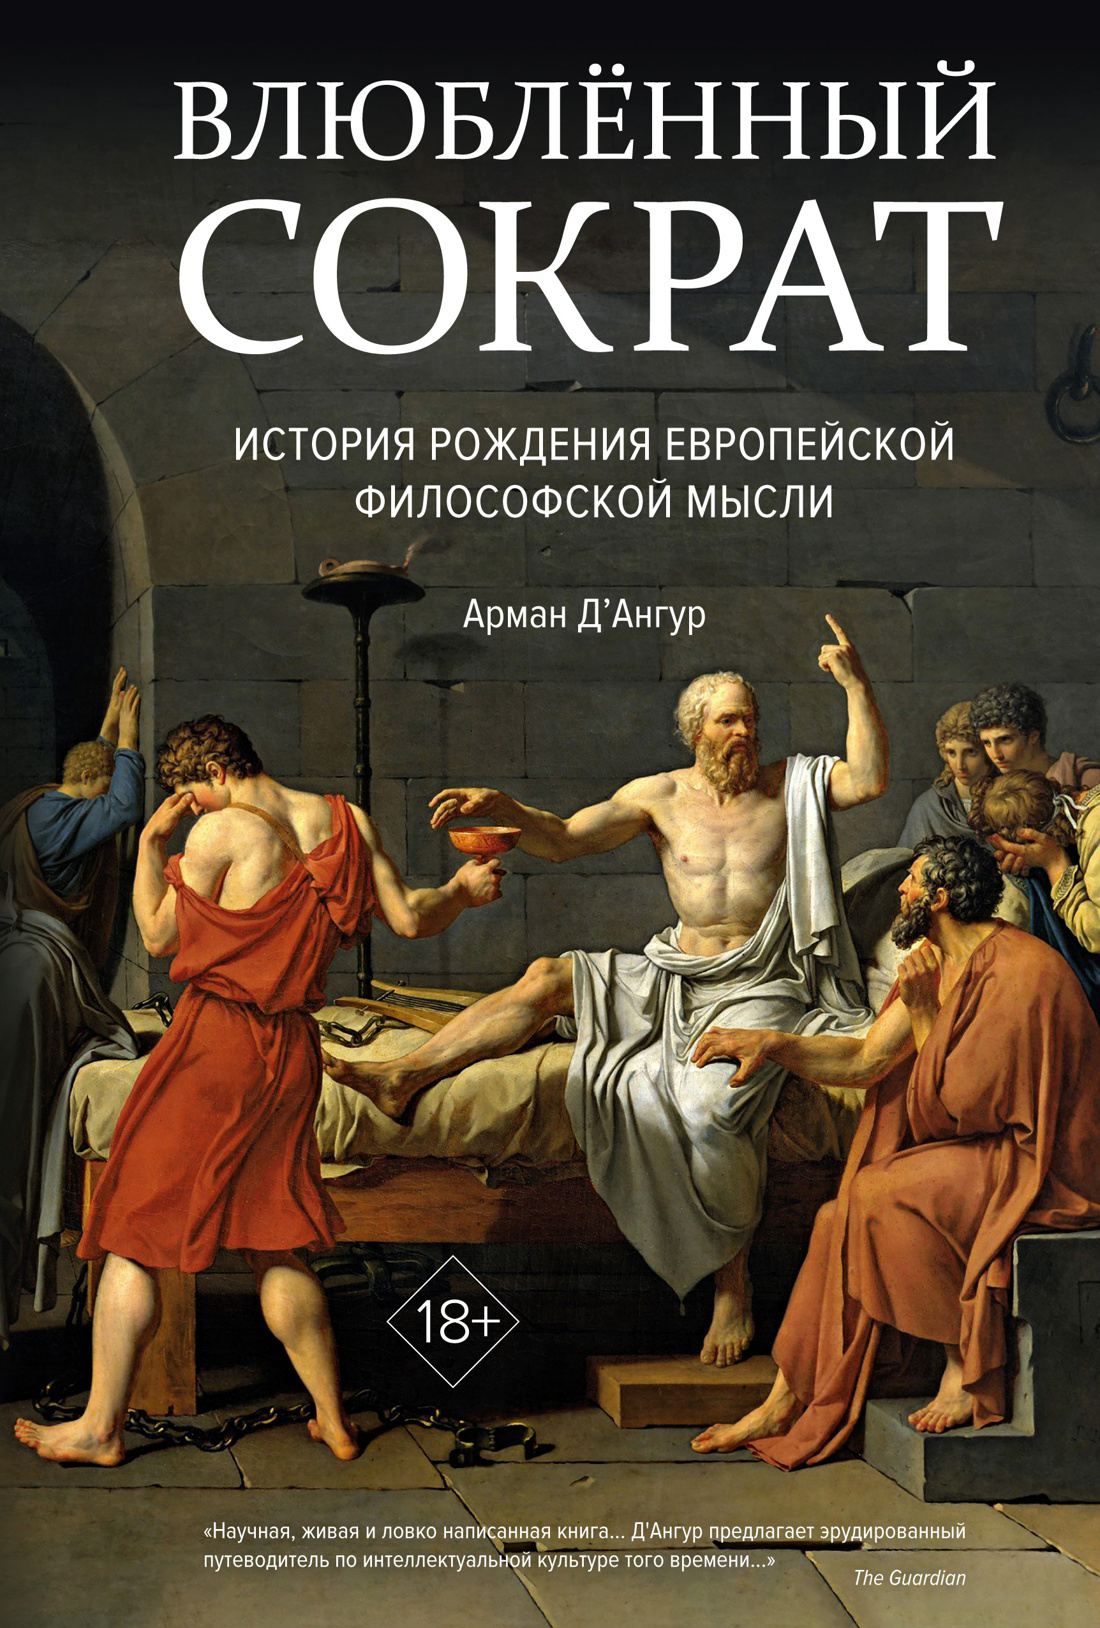 Влюбленный Сократ. История рождения европейской философской мысли колонна низкая сократ нимфа 55х27